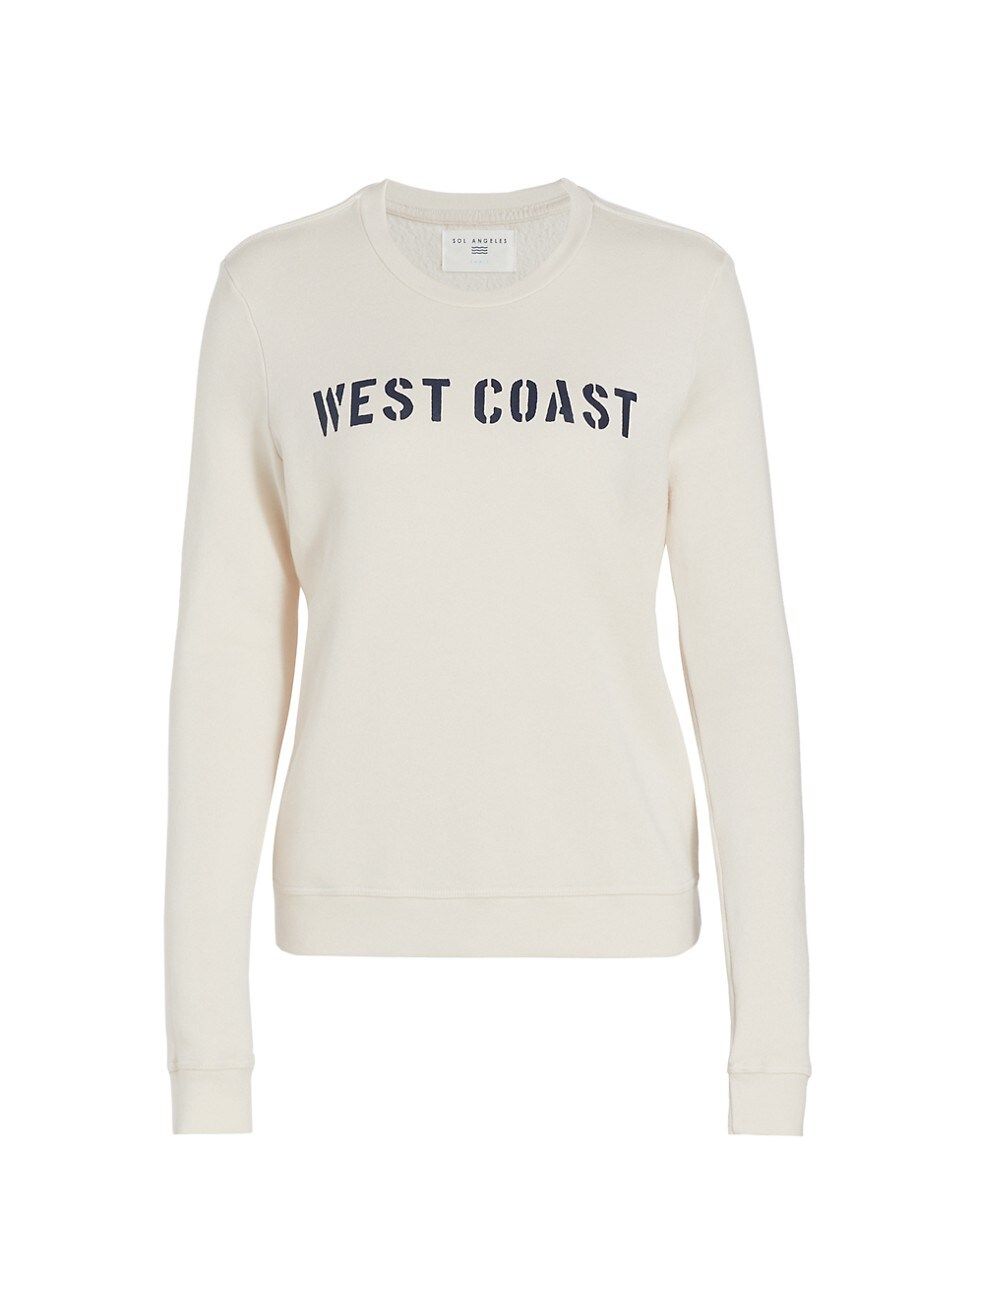 West Coast Sweater | Saks Fifth Avenue